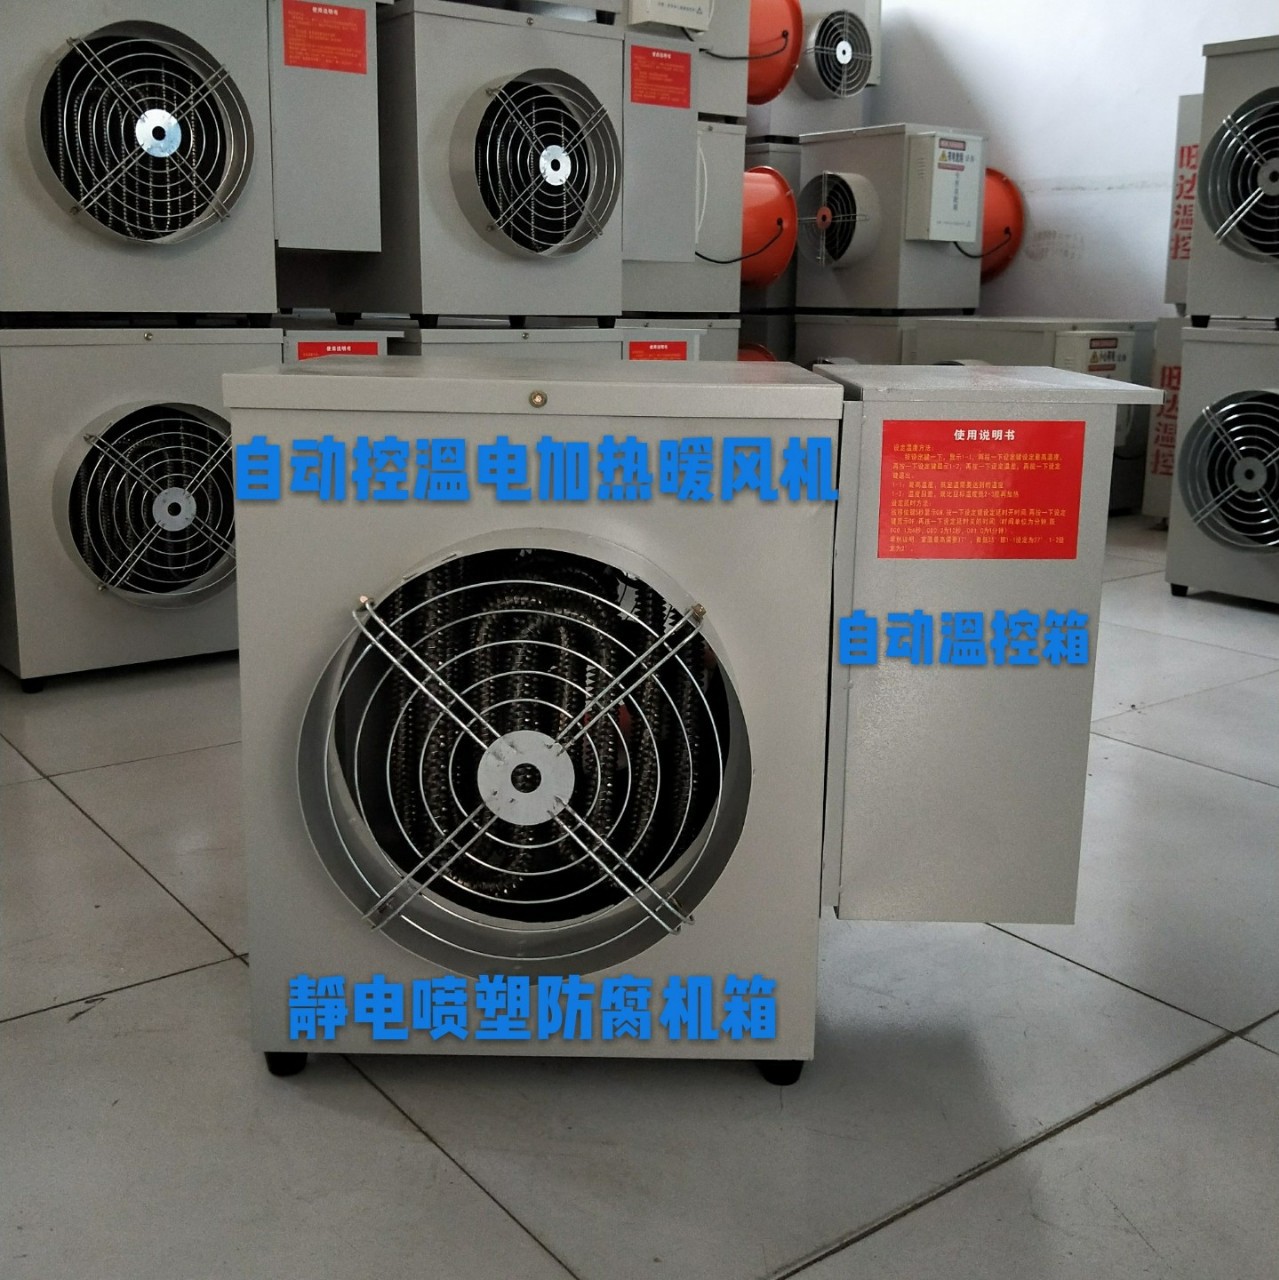 黑龙江养殖温控设备厂家 暖风机 电暖炉 厂家生产批发